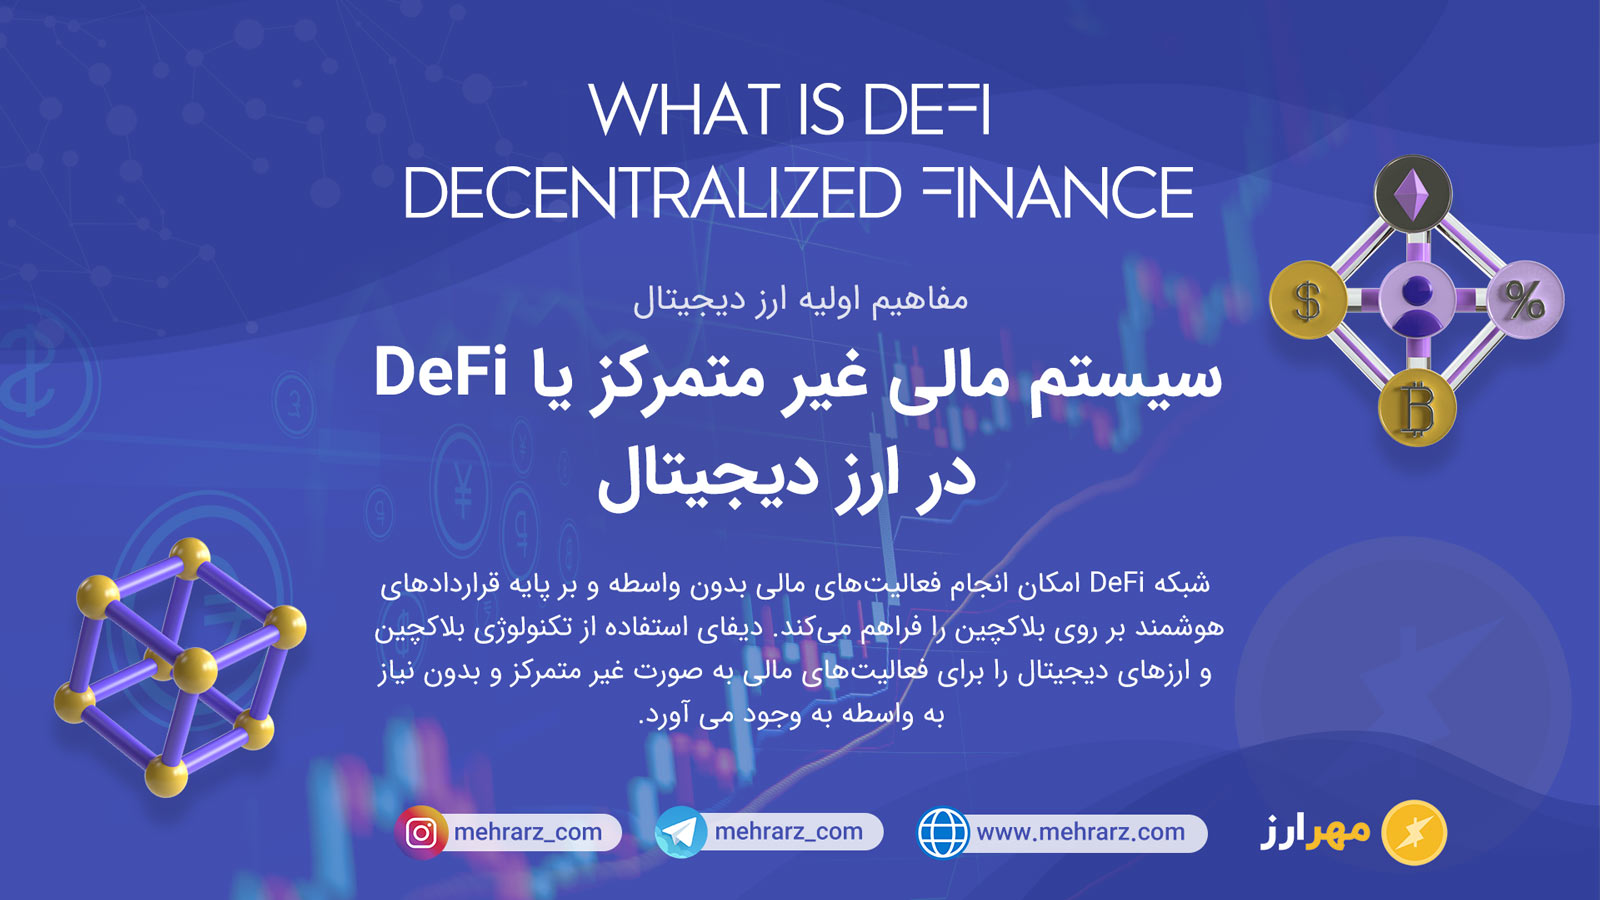 سیستم مالی غیر متمرکز یا DeFi در ارز دیجیتال چیست؟